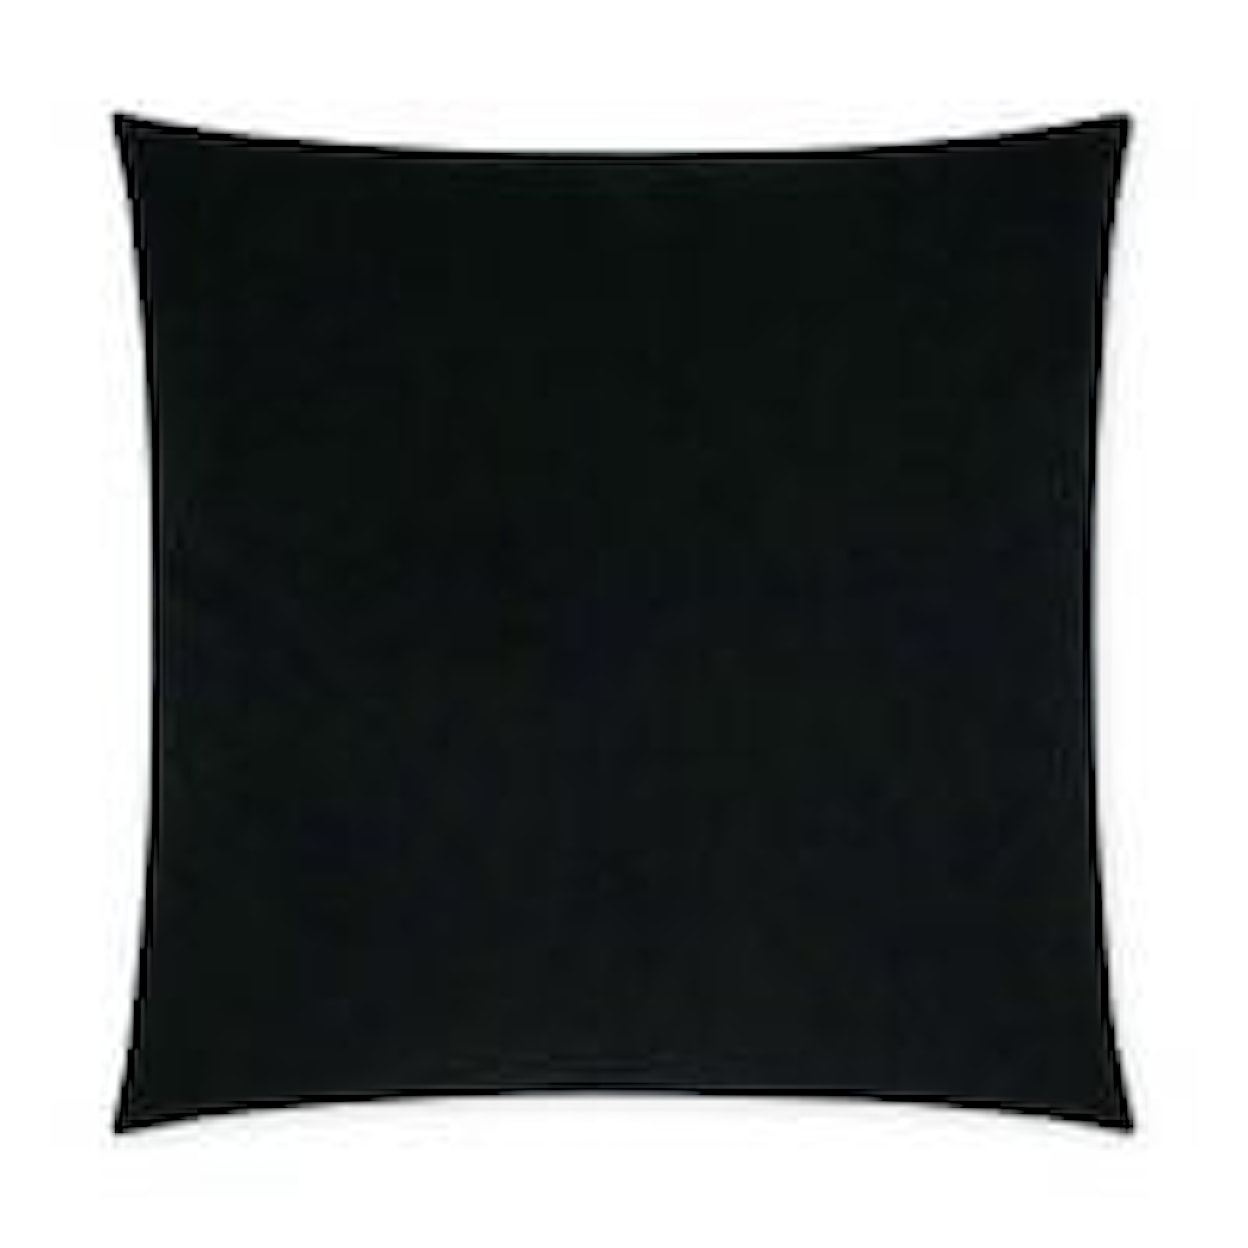 D.V. KAP Home Indoor Pillows POSH DUO BLACK 22" PILLOW